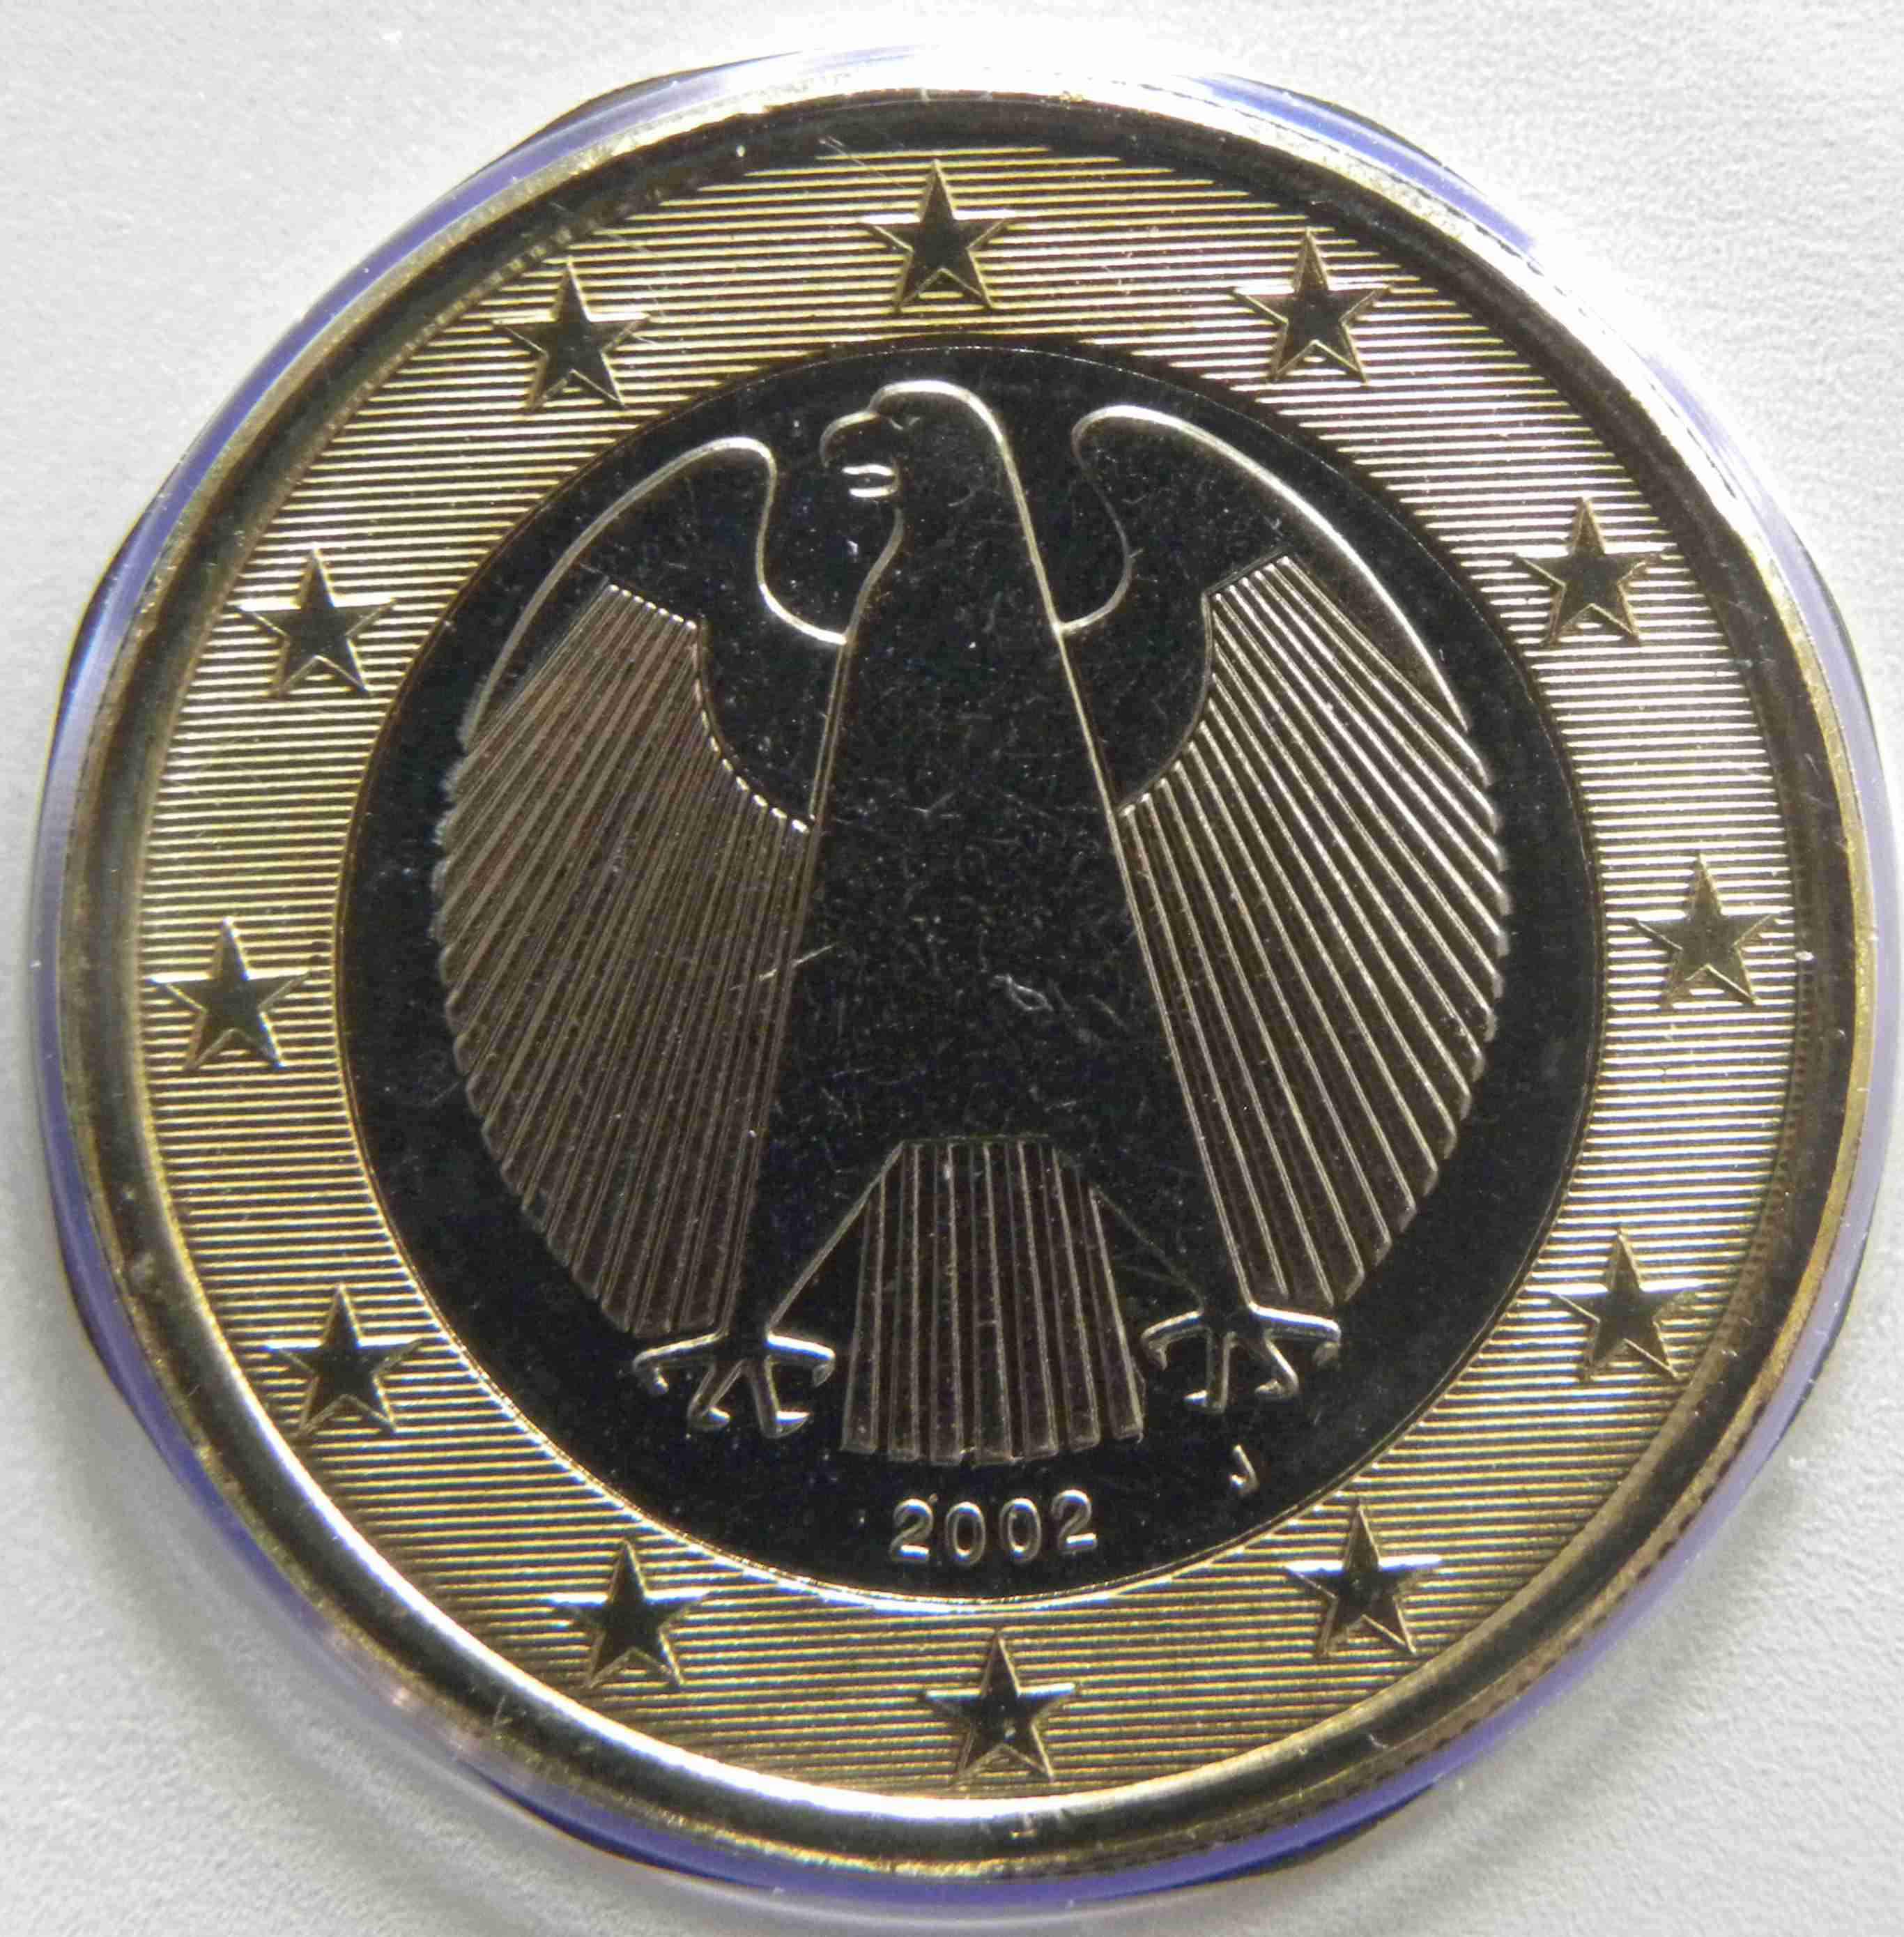 Deutschland 1 Euro Münze 2002 J - euro-muenzen.tv - Der Online